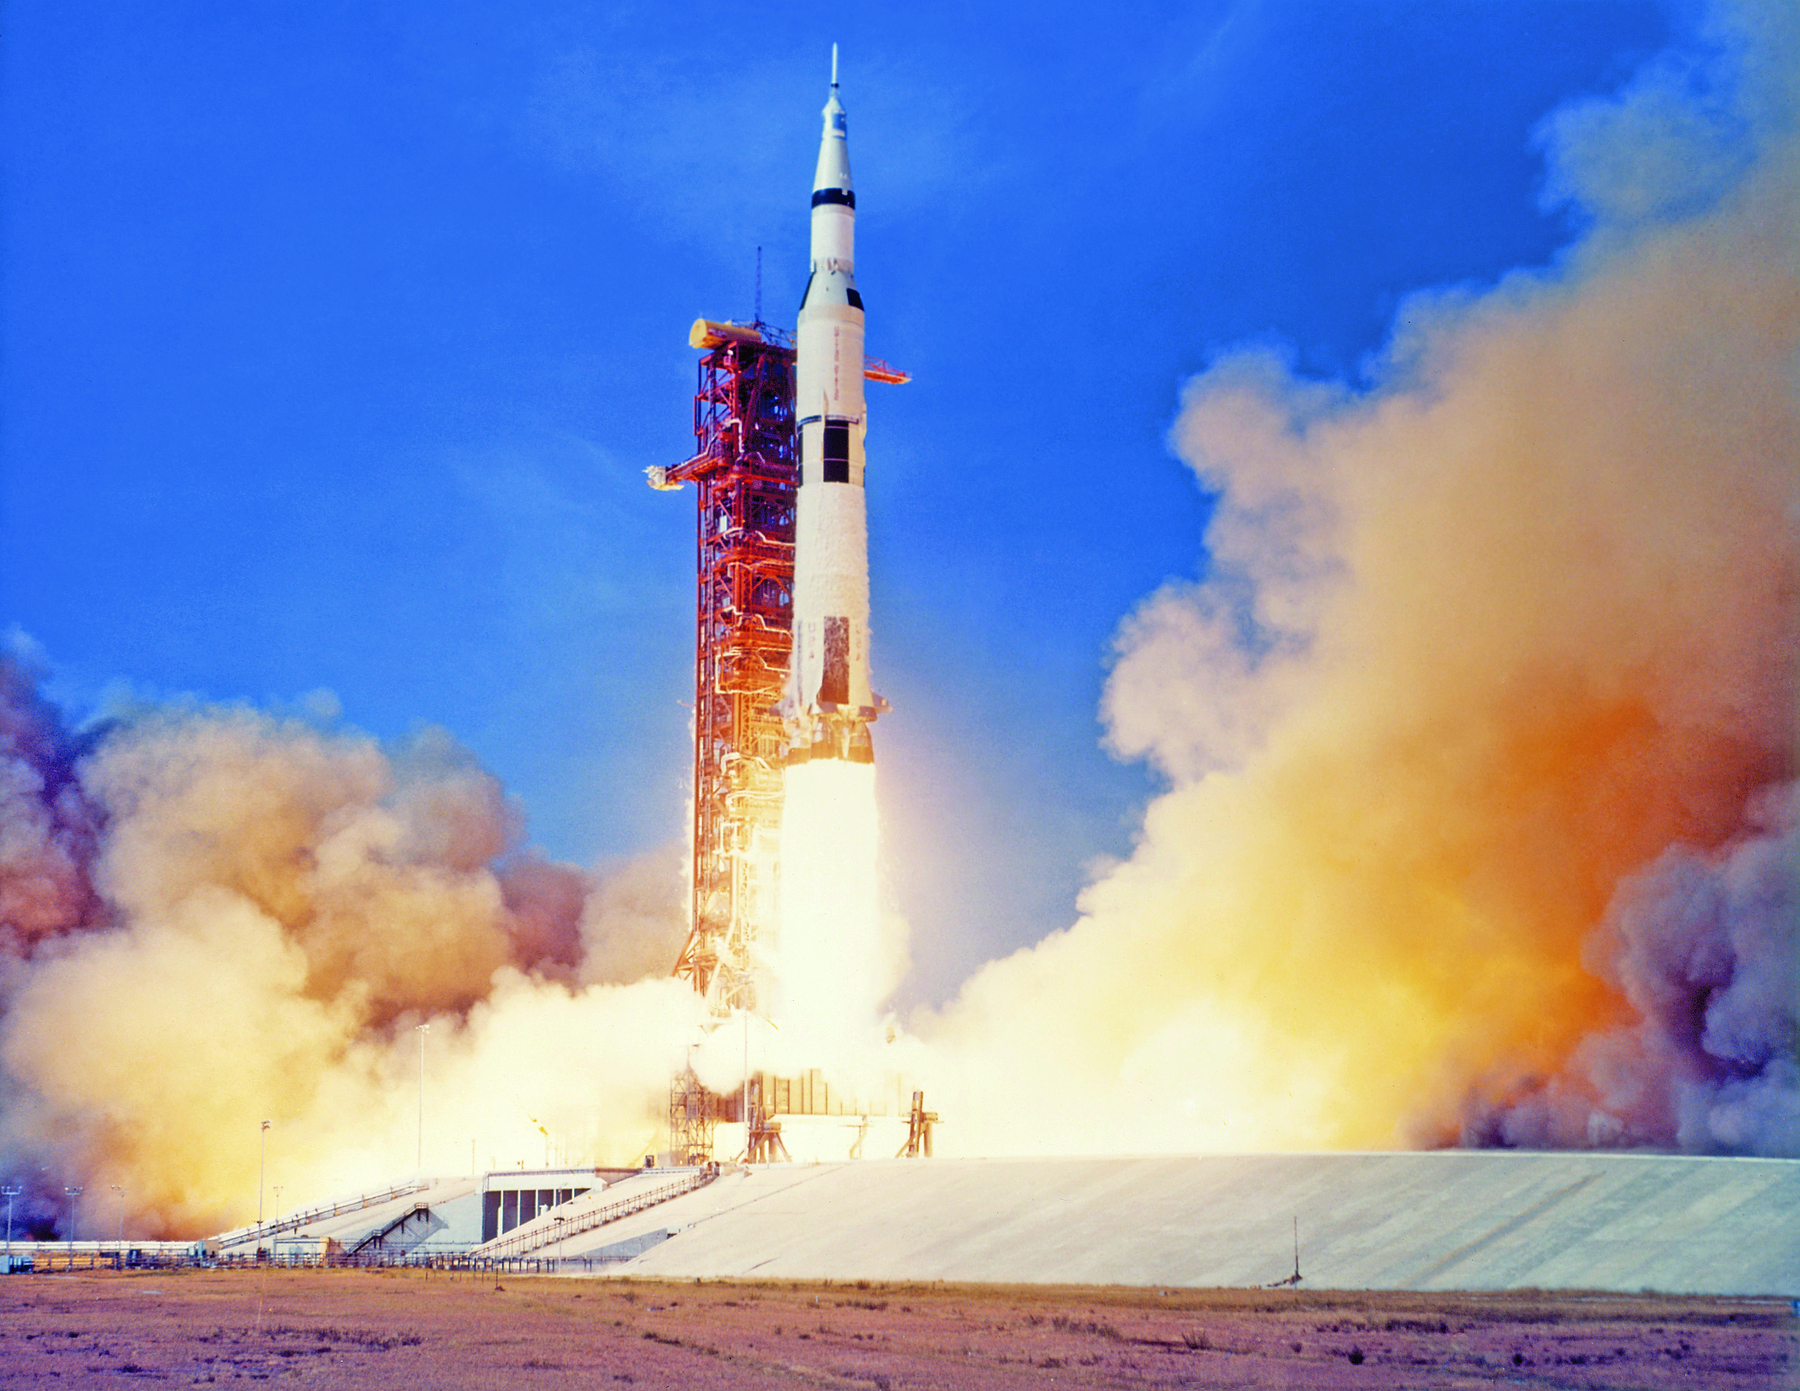 Fotografia. Foguete espacial em uma estação  no momento de seu lançamento, expelindo jatos de gás aquecido e fogo pela sua base, ladeada pela fumaça resultante desse processo.